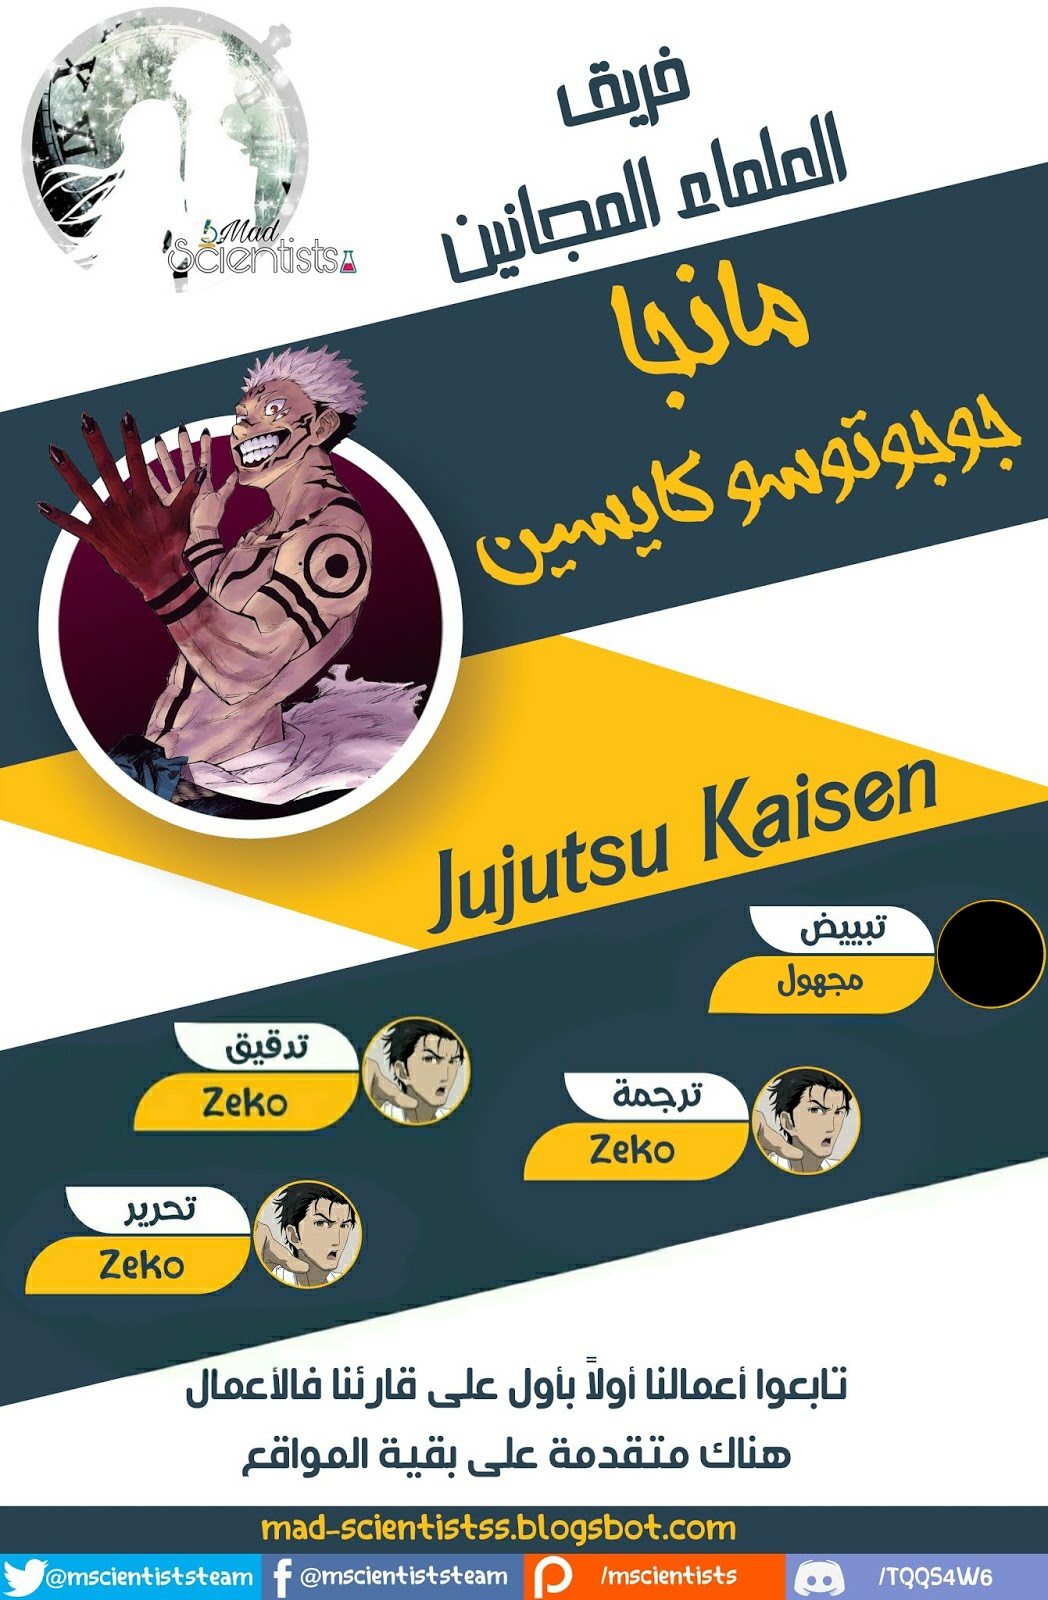 Jujutsu Kaisen: Chapter 151 - Page 1